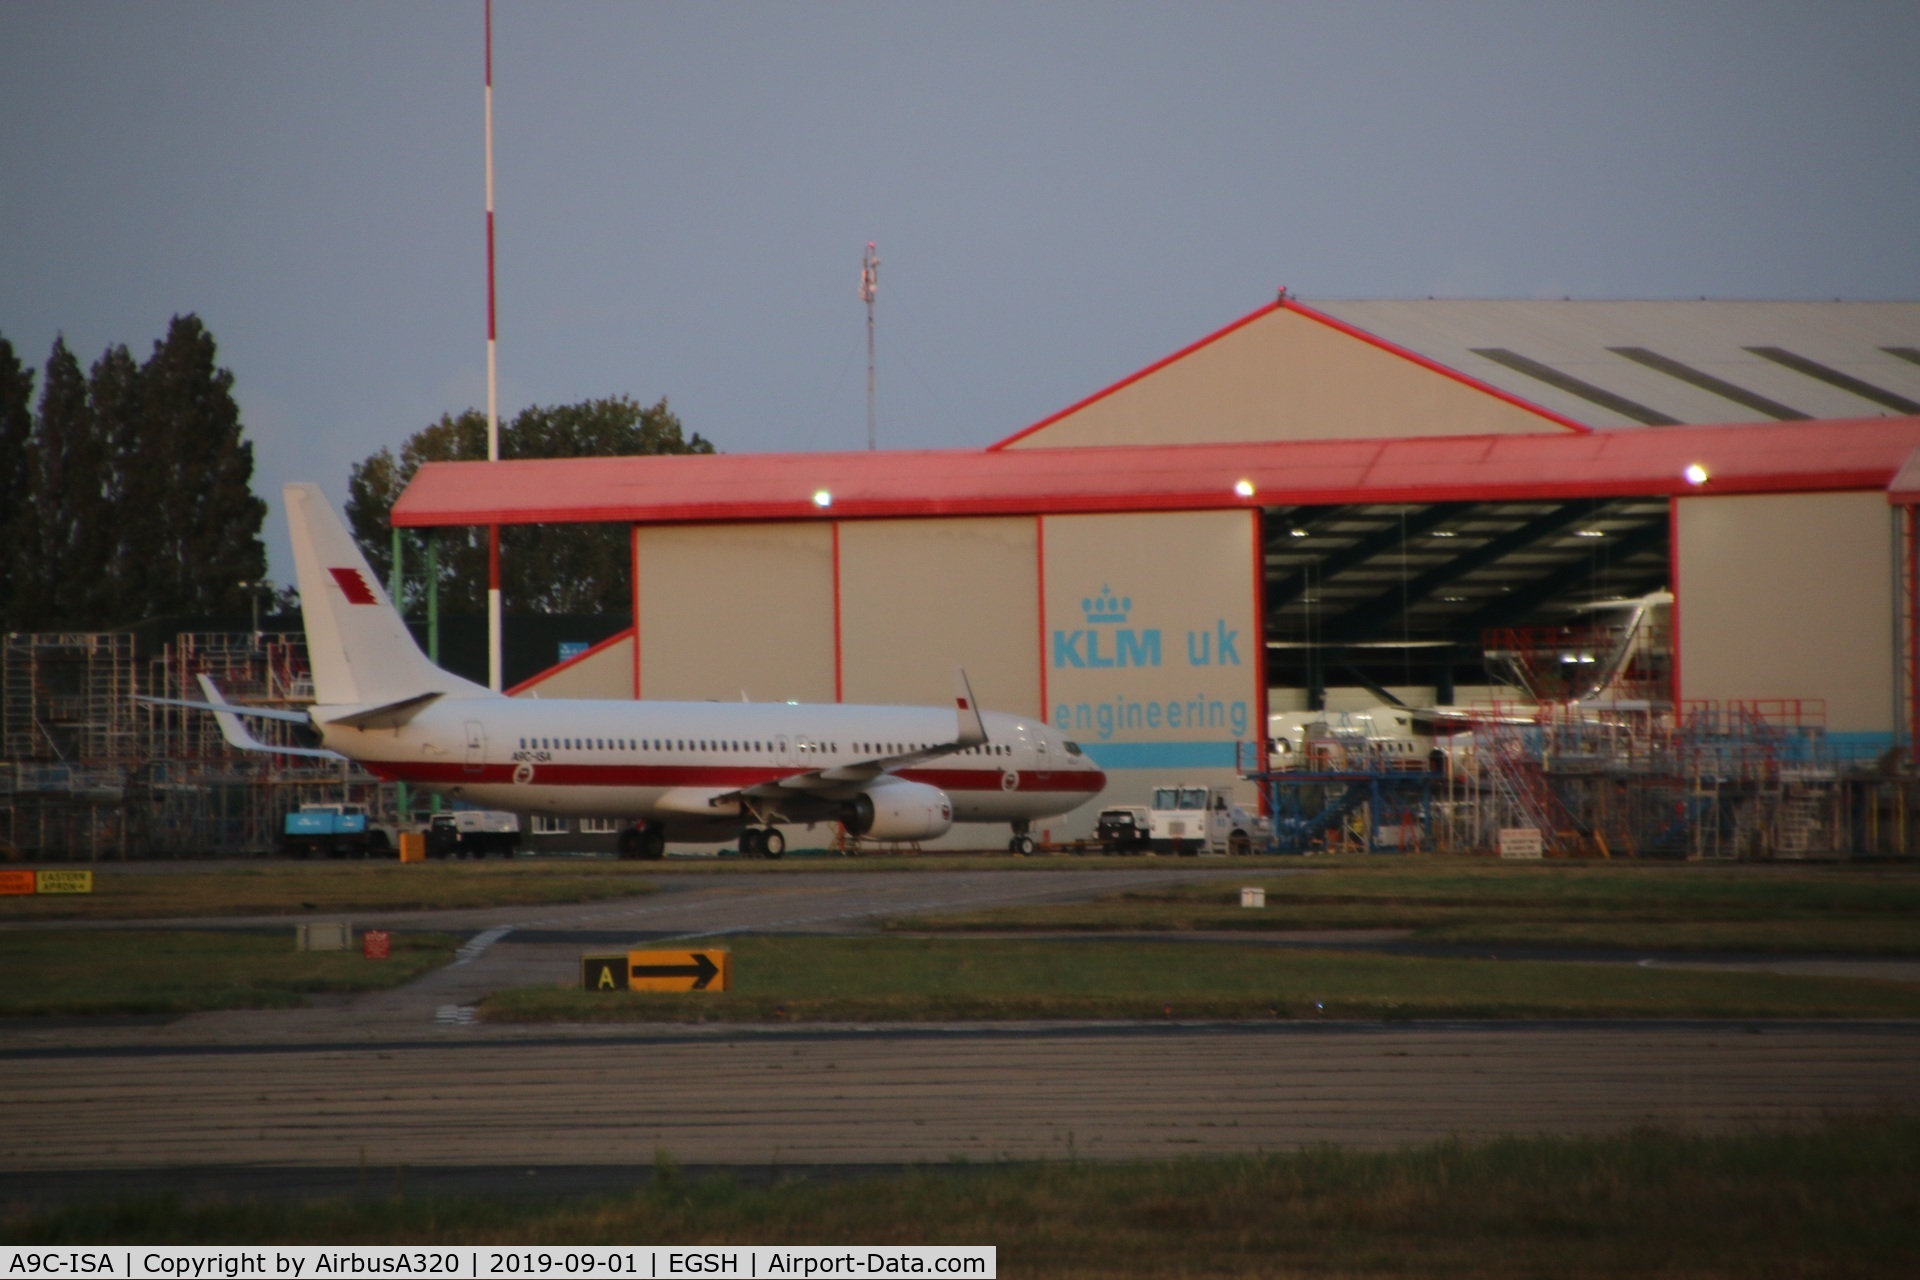 A9C-ISA, 2015 Boeing 737-86J C/N 37750, Seen parked in KLM Engineering
inside the hangar is A6-RJ1